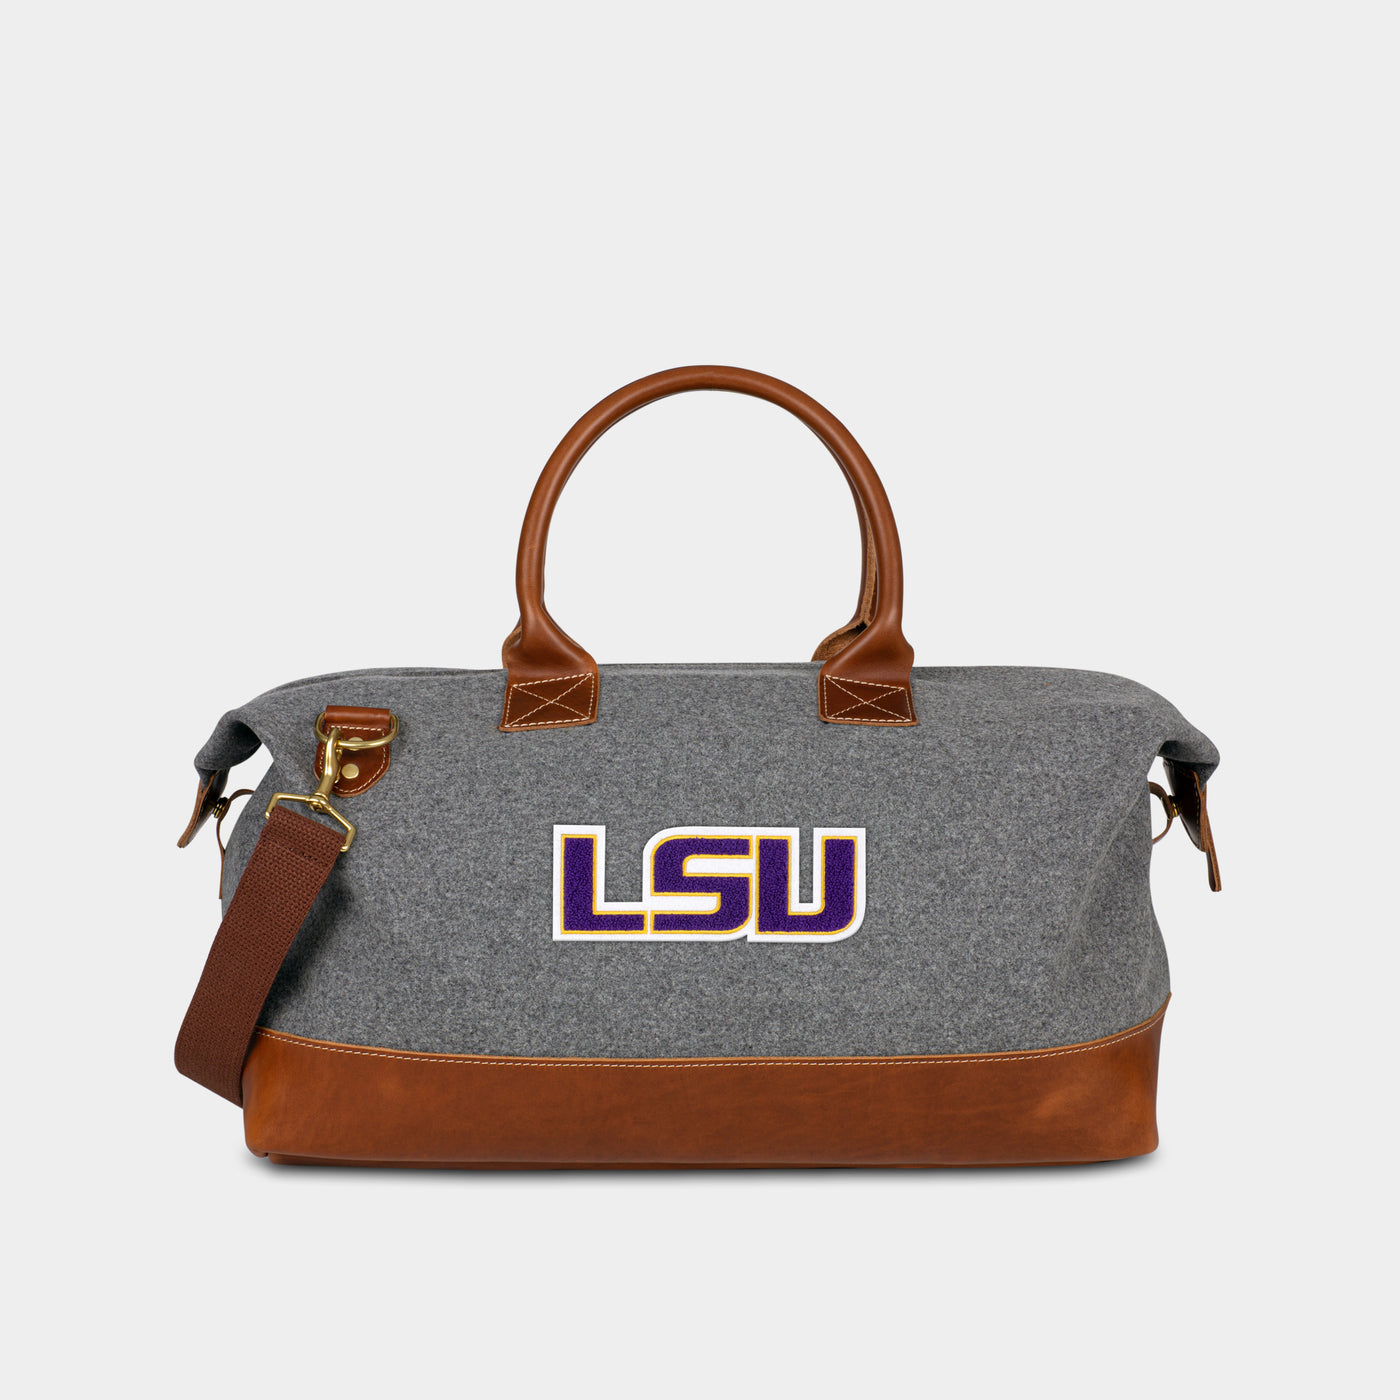 LSU Tigers "LSU" Weekender Duffle Bag